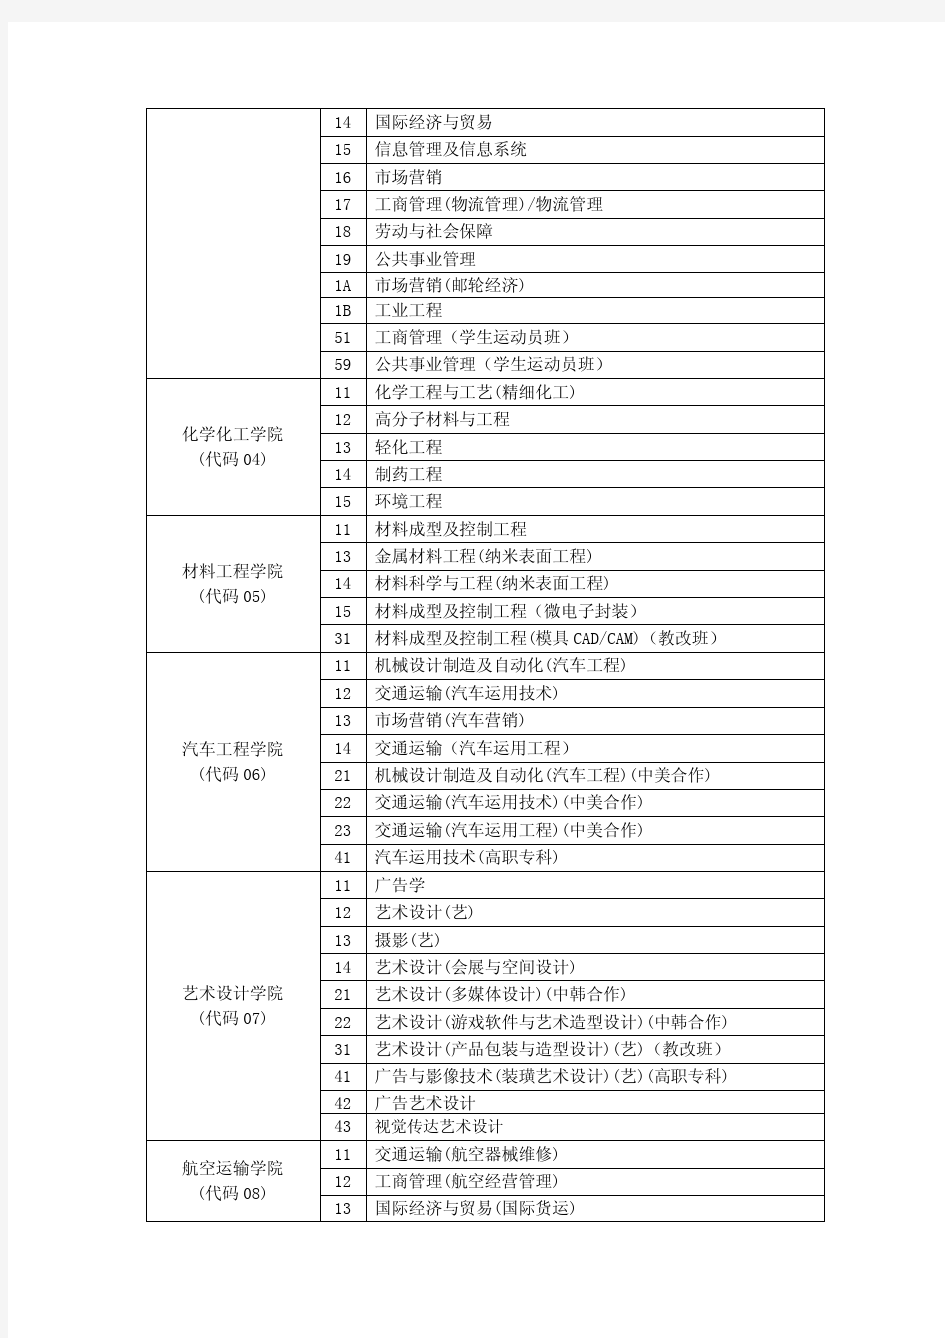 上海工程技术大学班级代码及学号编号规则